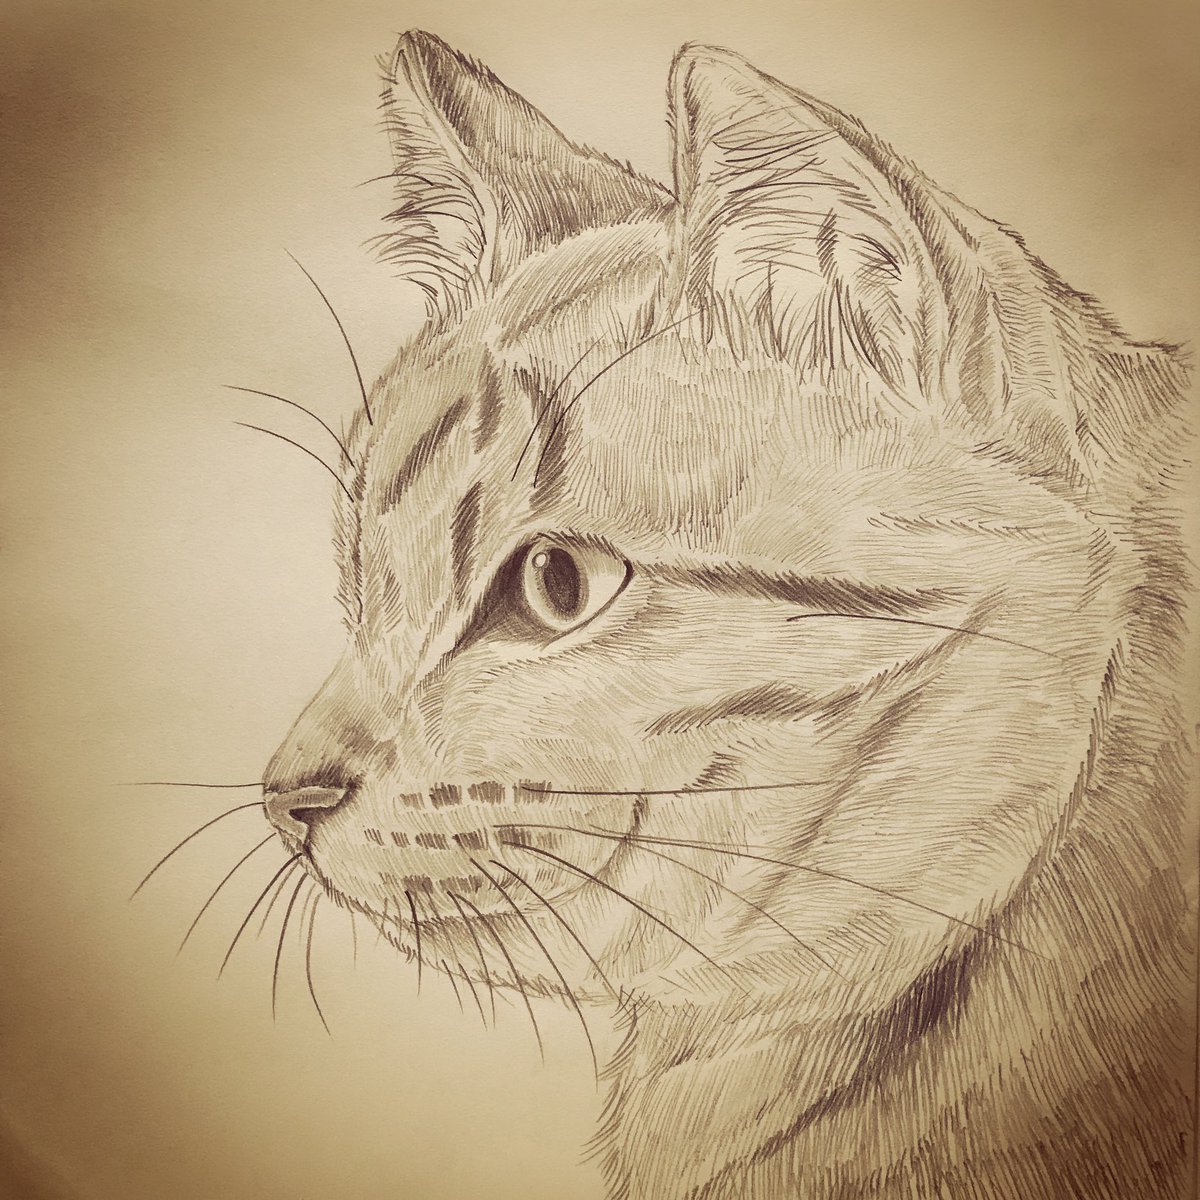 Yukari 横顔 猫 イラスト イラストレーション 鉛筆画 絵描きさんと繋がりたい イラスト好きさんと繋がりたい 猫好きさんと繋がりたい Cat Illustration